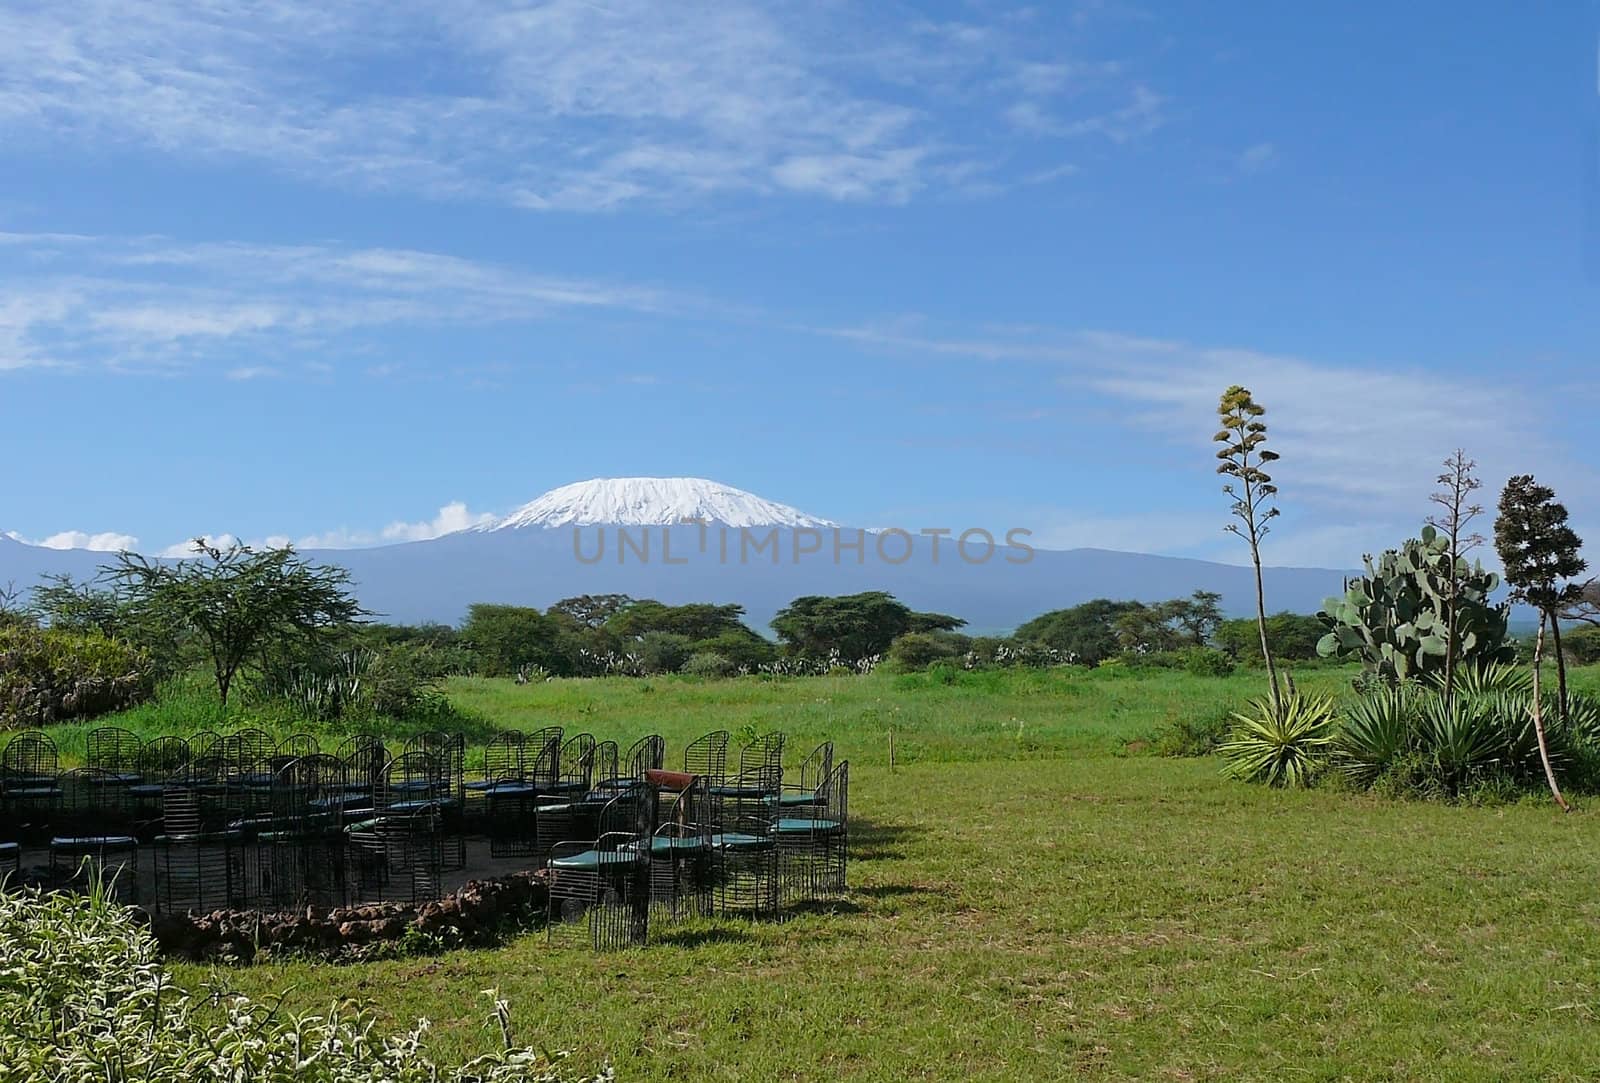 Kilimanjaro in Kenya by Gbuglok